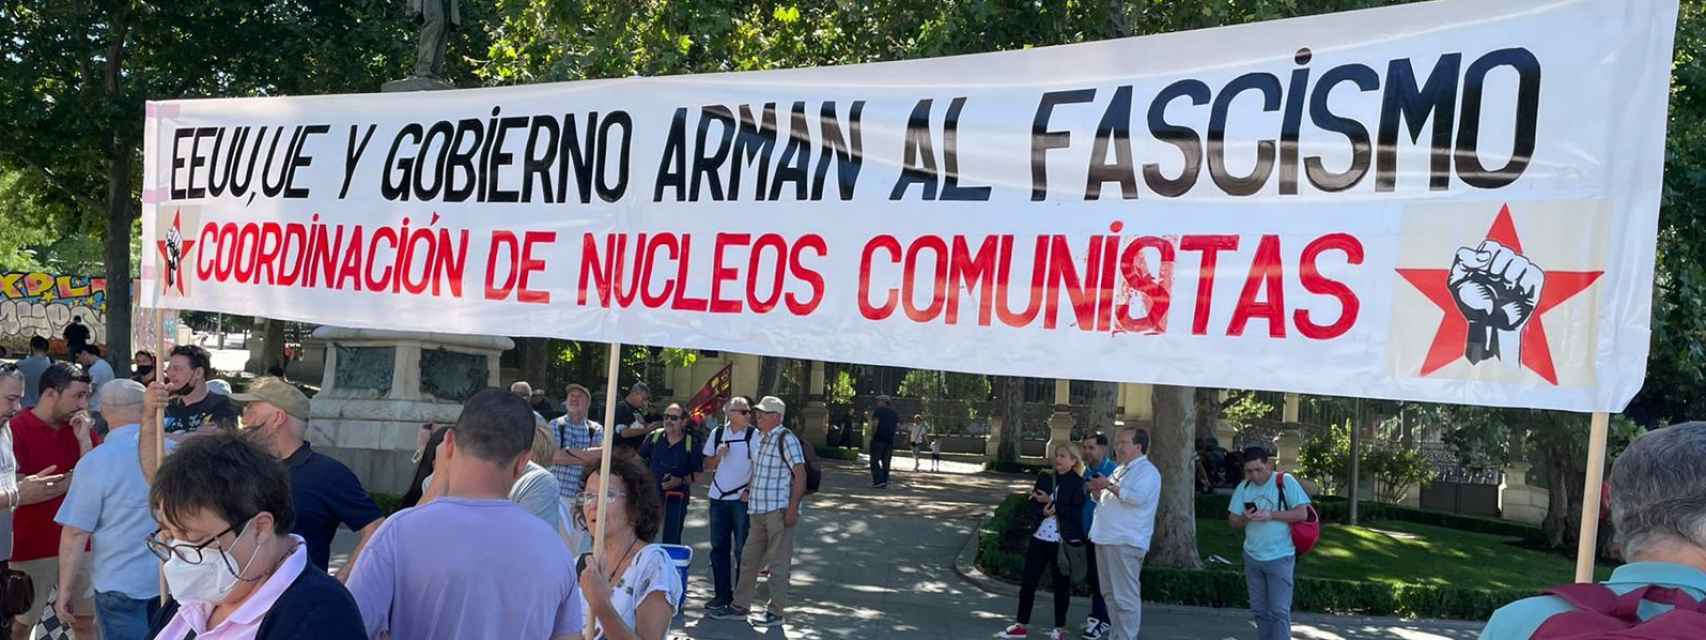 Una de las pancartas que se mostrarán durante la manifestación contra la OTAN de Madrid